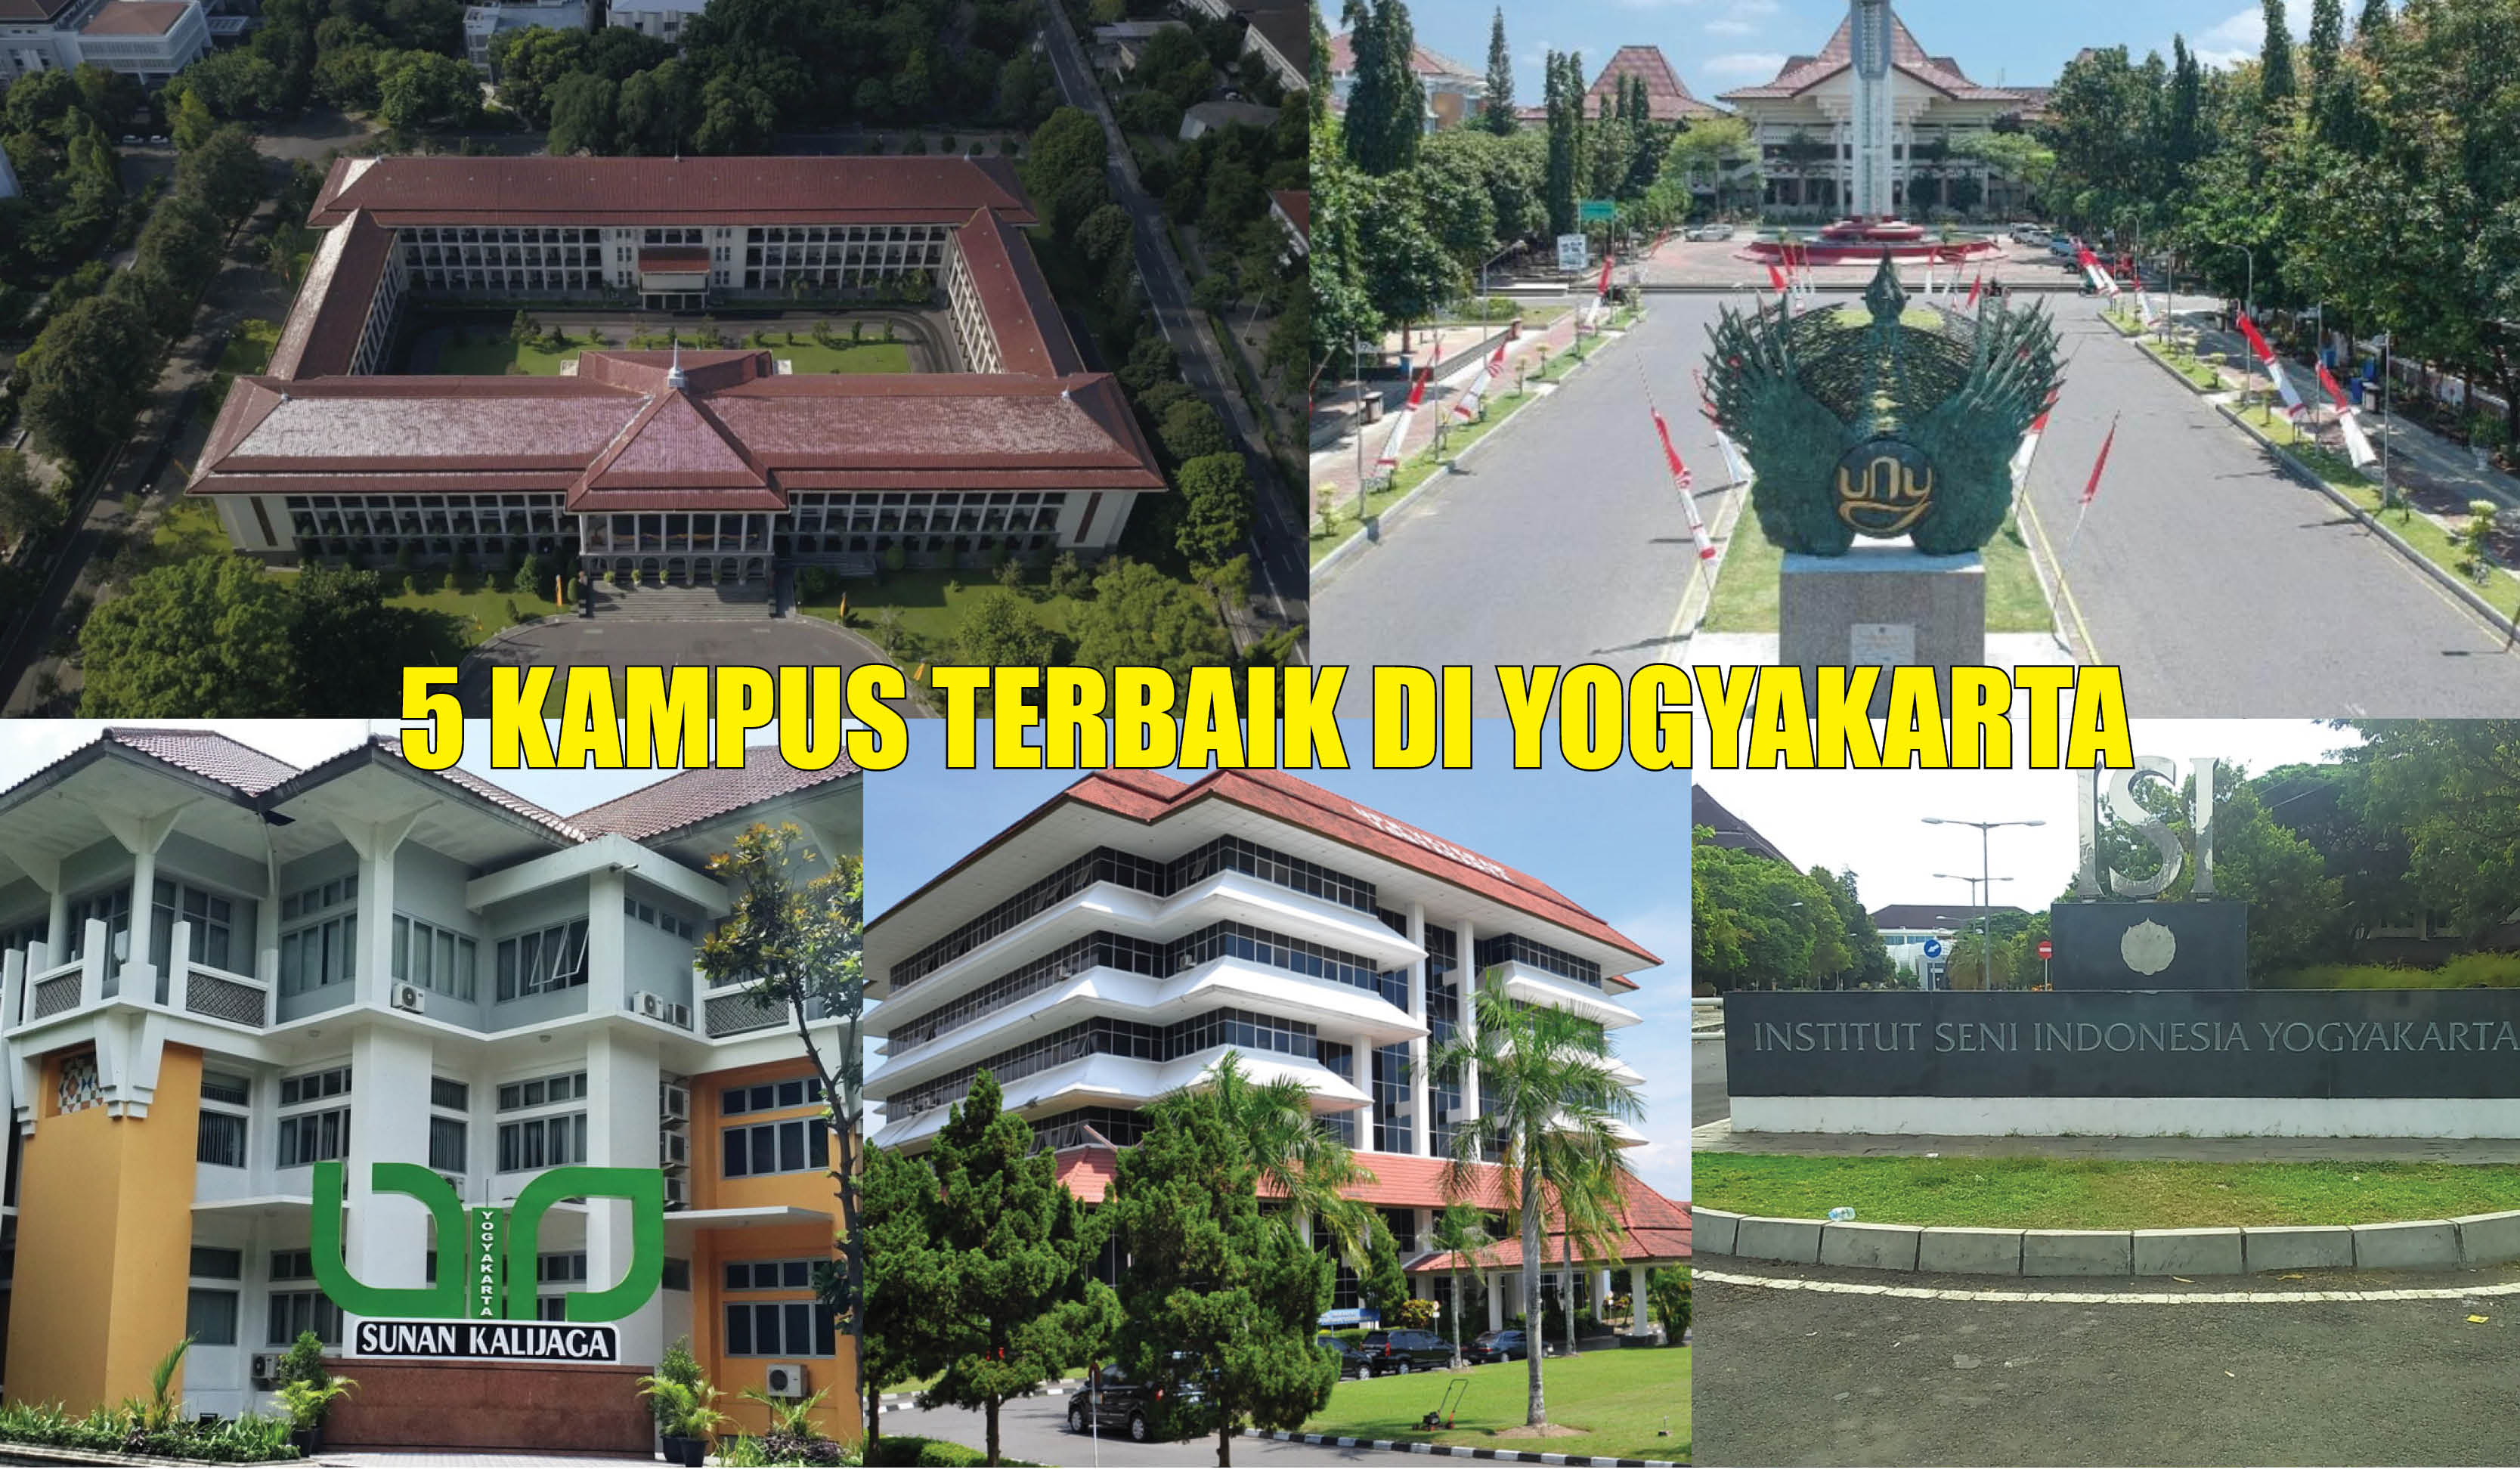 5 Kampus Terbaik di Yogyakarta, Nomor 1 Punya 18 Fakultas dan 2 Sekolah, Ada yang Tahu?